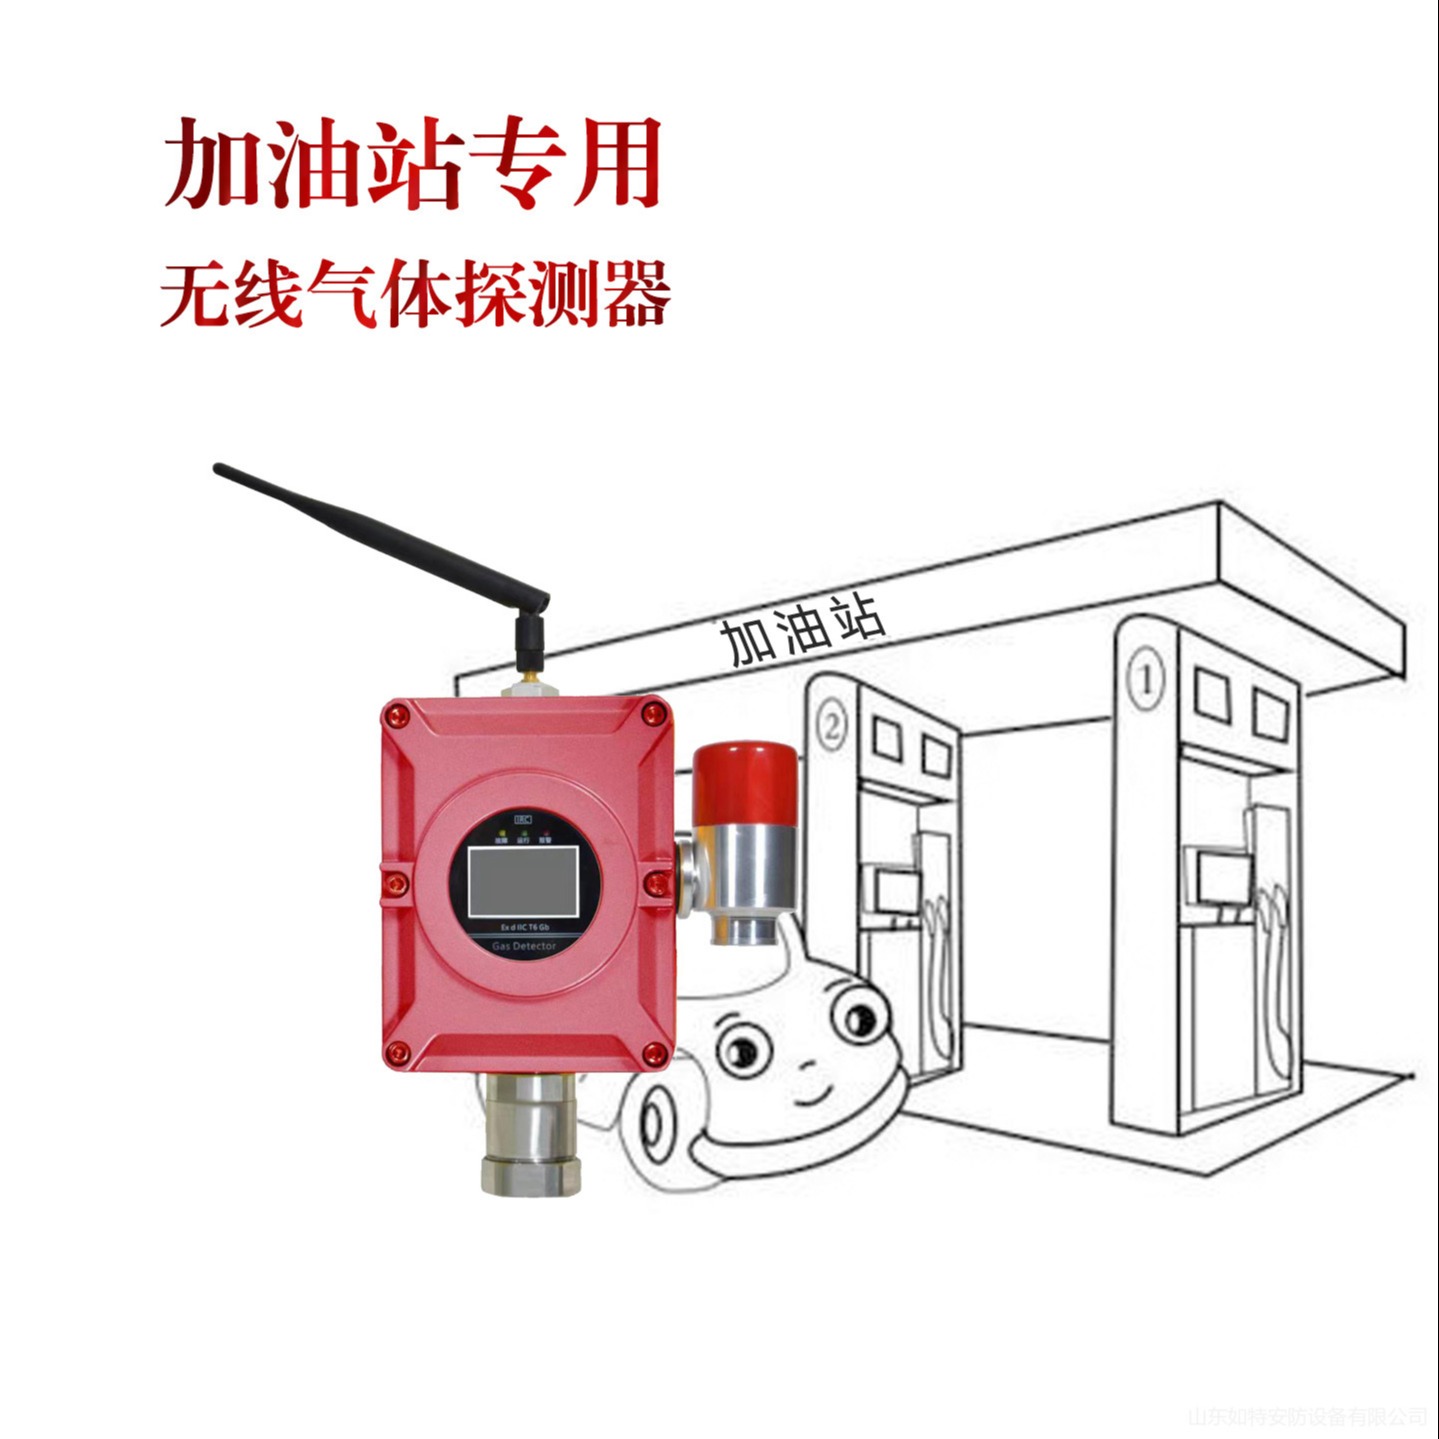 超低功耗红外气体探测器 加油站可燃气体报警器 电池供电